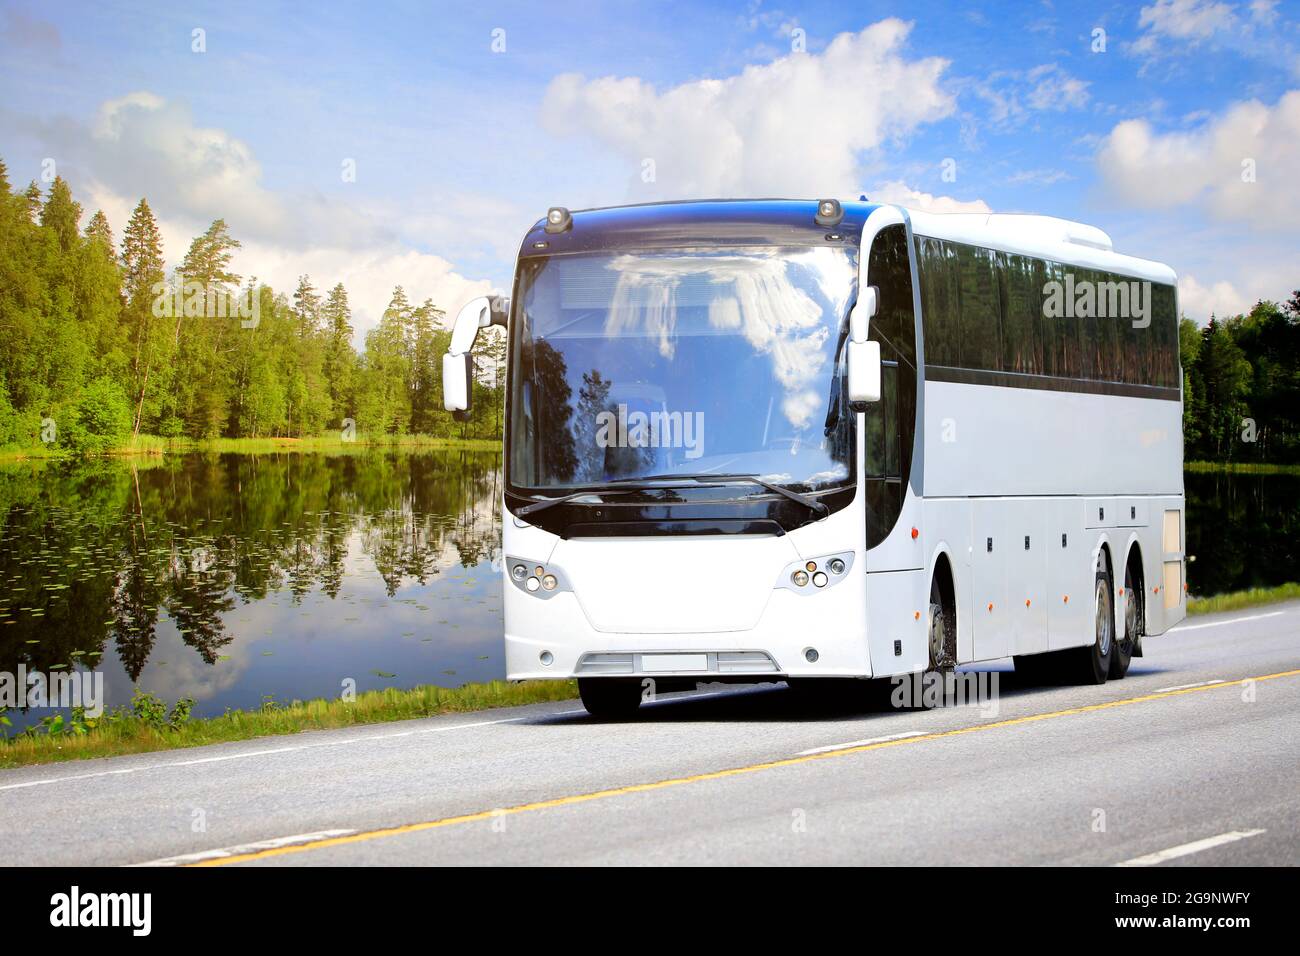 Weißer Reisebus fährt auf der Autobahn durch die ländliche Landschaft eines ruhigen Sees, grünen Waldes und blauen Himmels mit fairweather-Wolken an einem Sommertag. Stockfoto